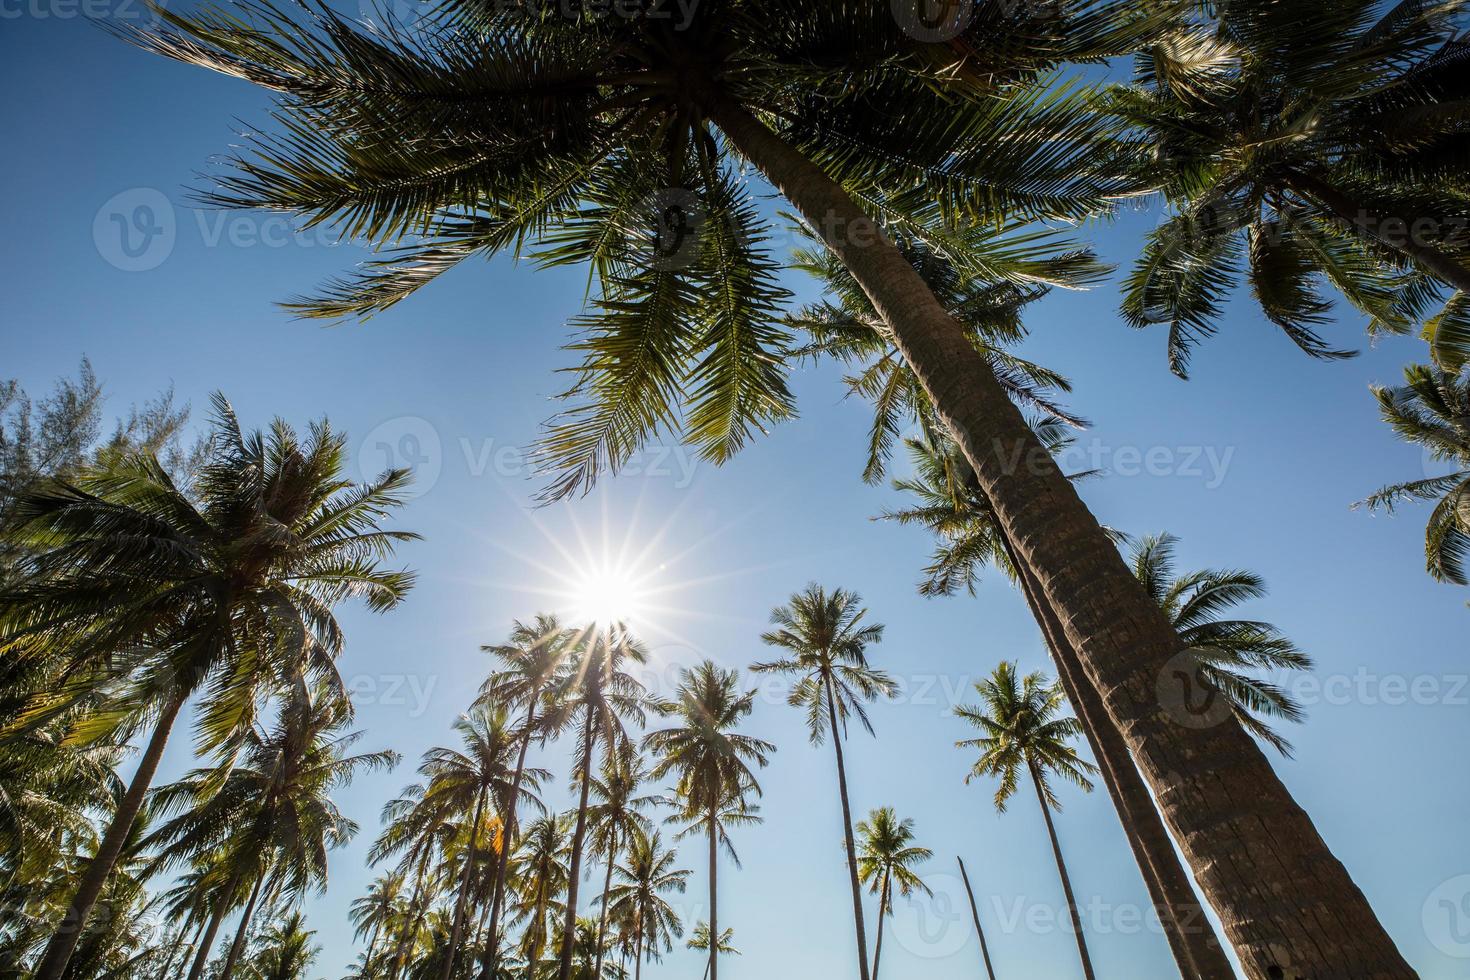 kokospalmer och blå himmel foto